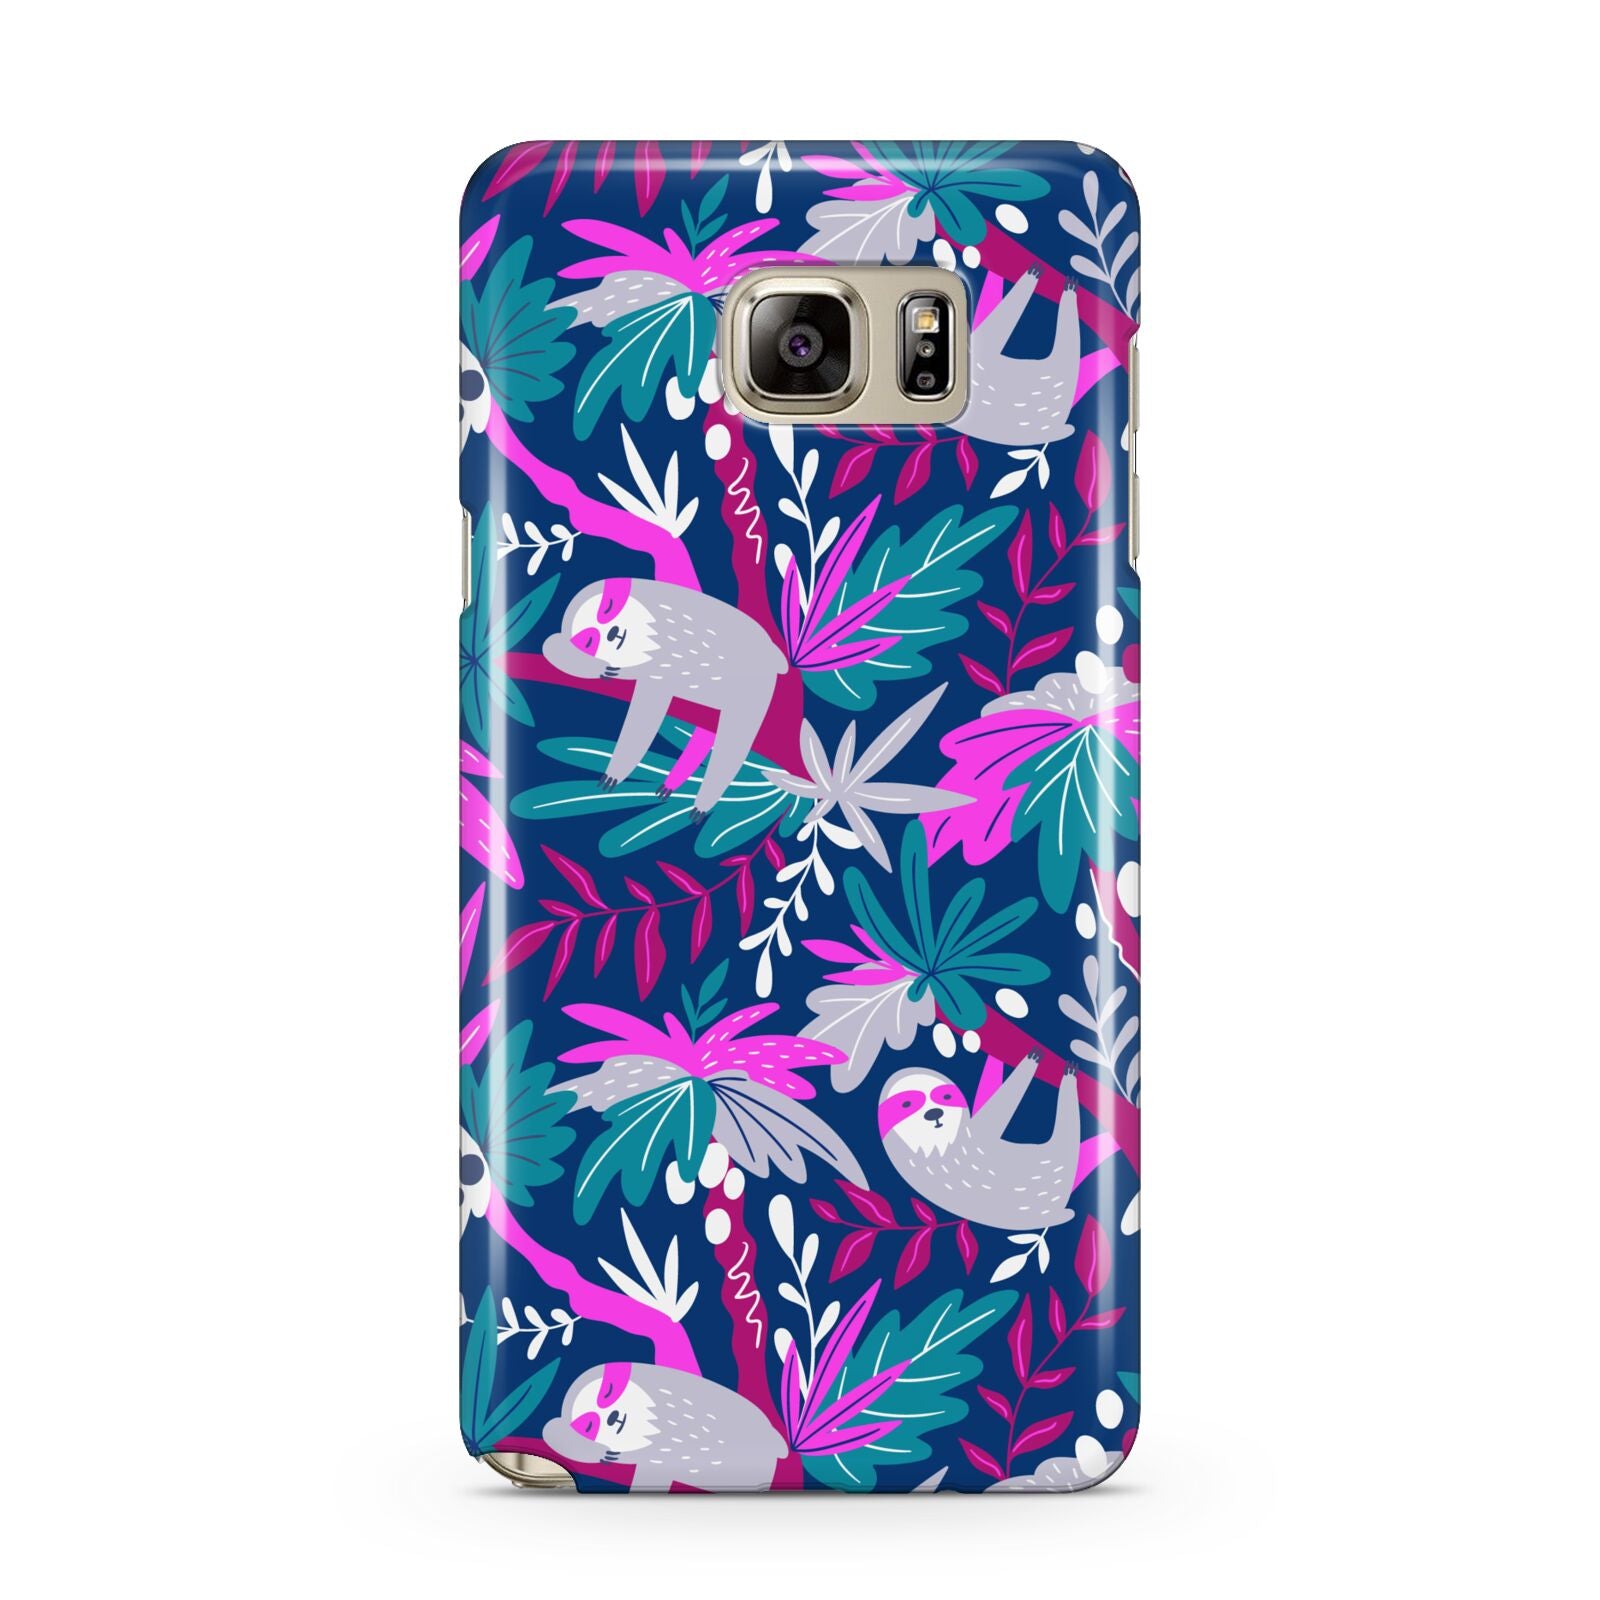 Sloth Samsung Galaxy Note 5 Case